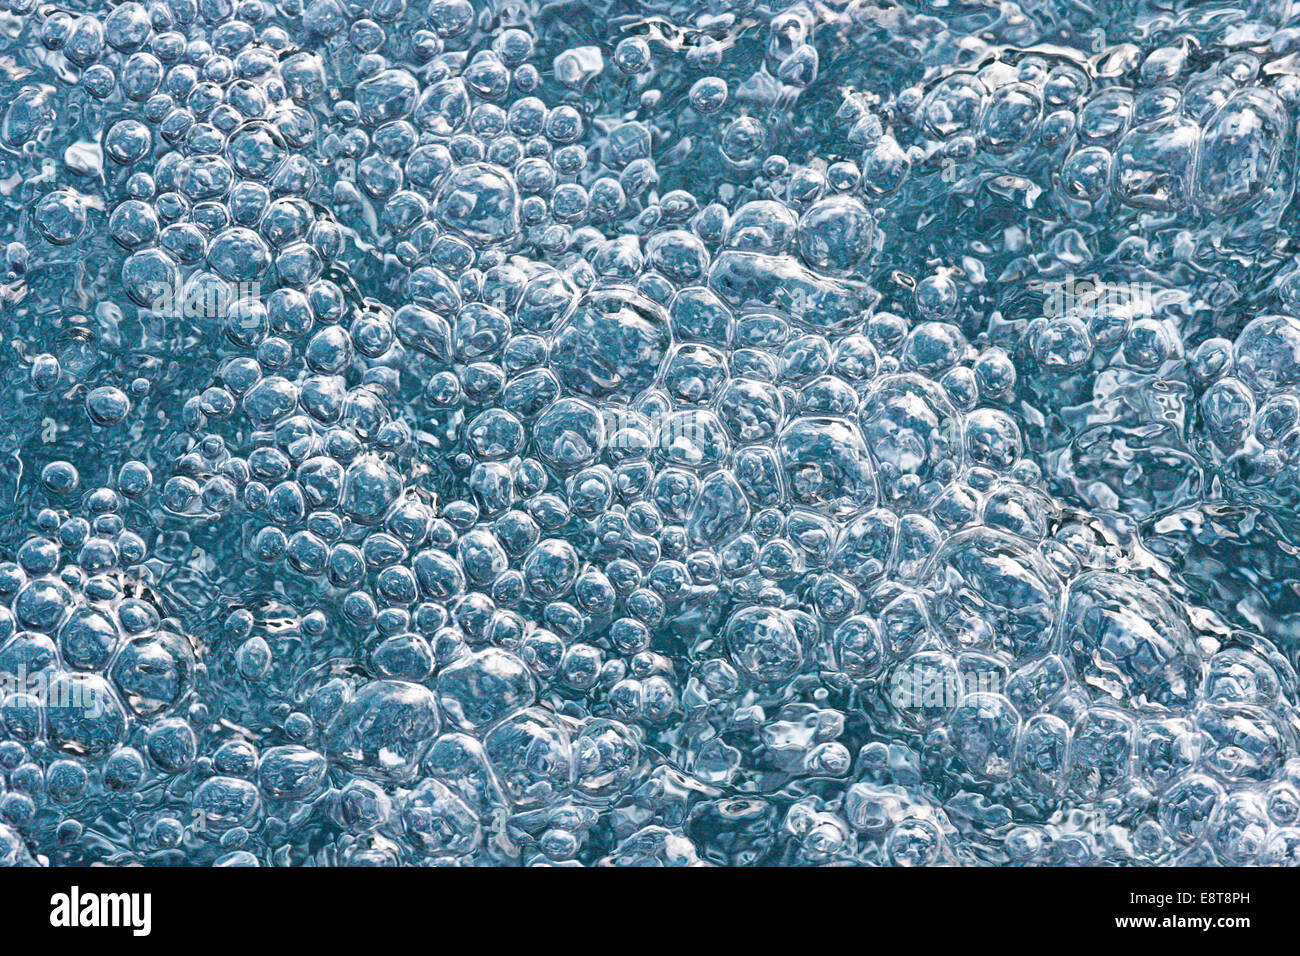 Oxygen-rich, sparkling water, Switzerland Stock Photo